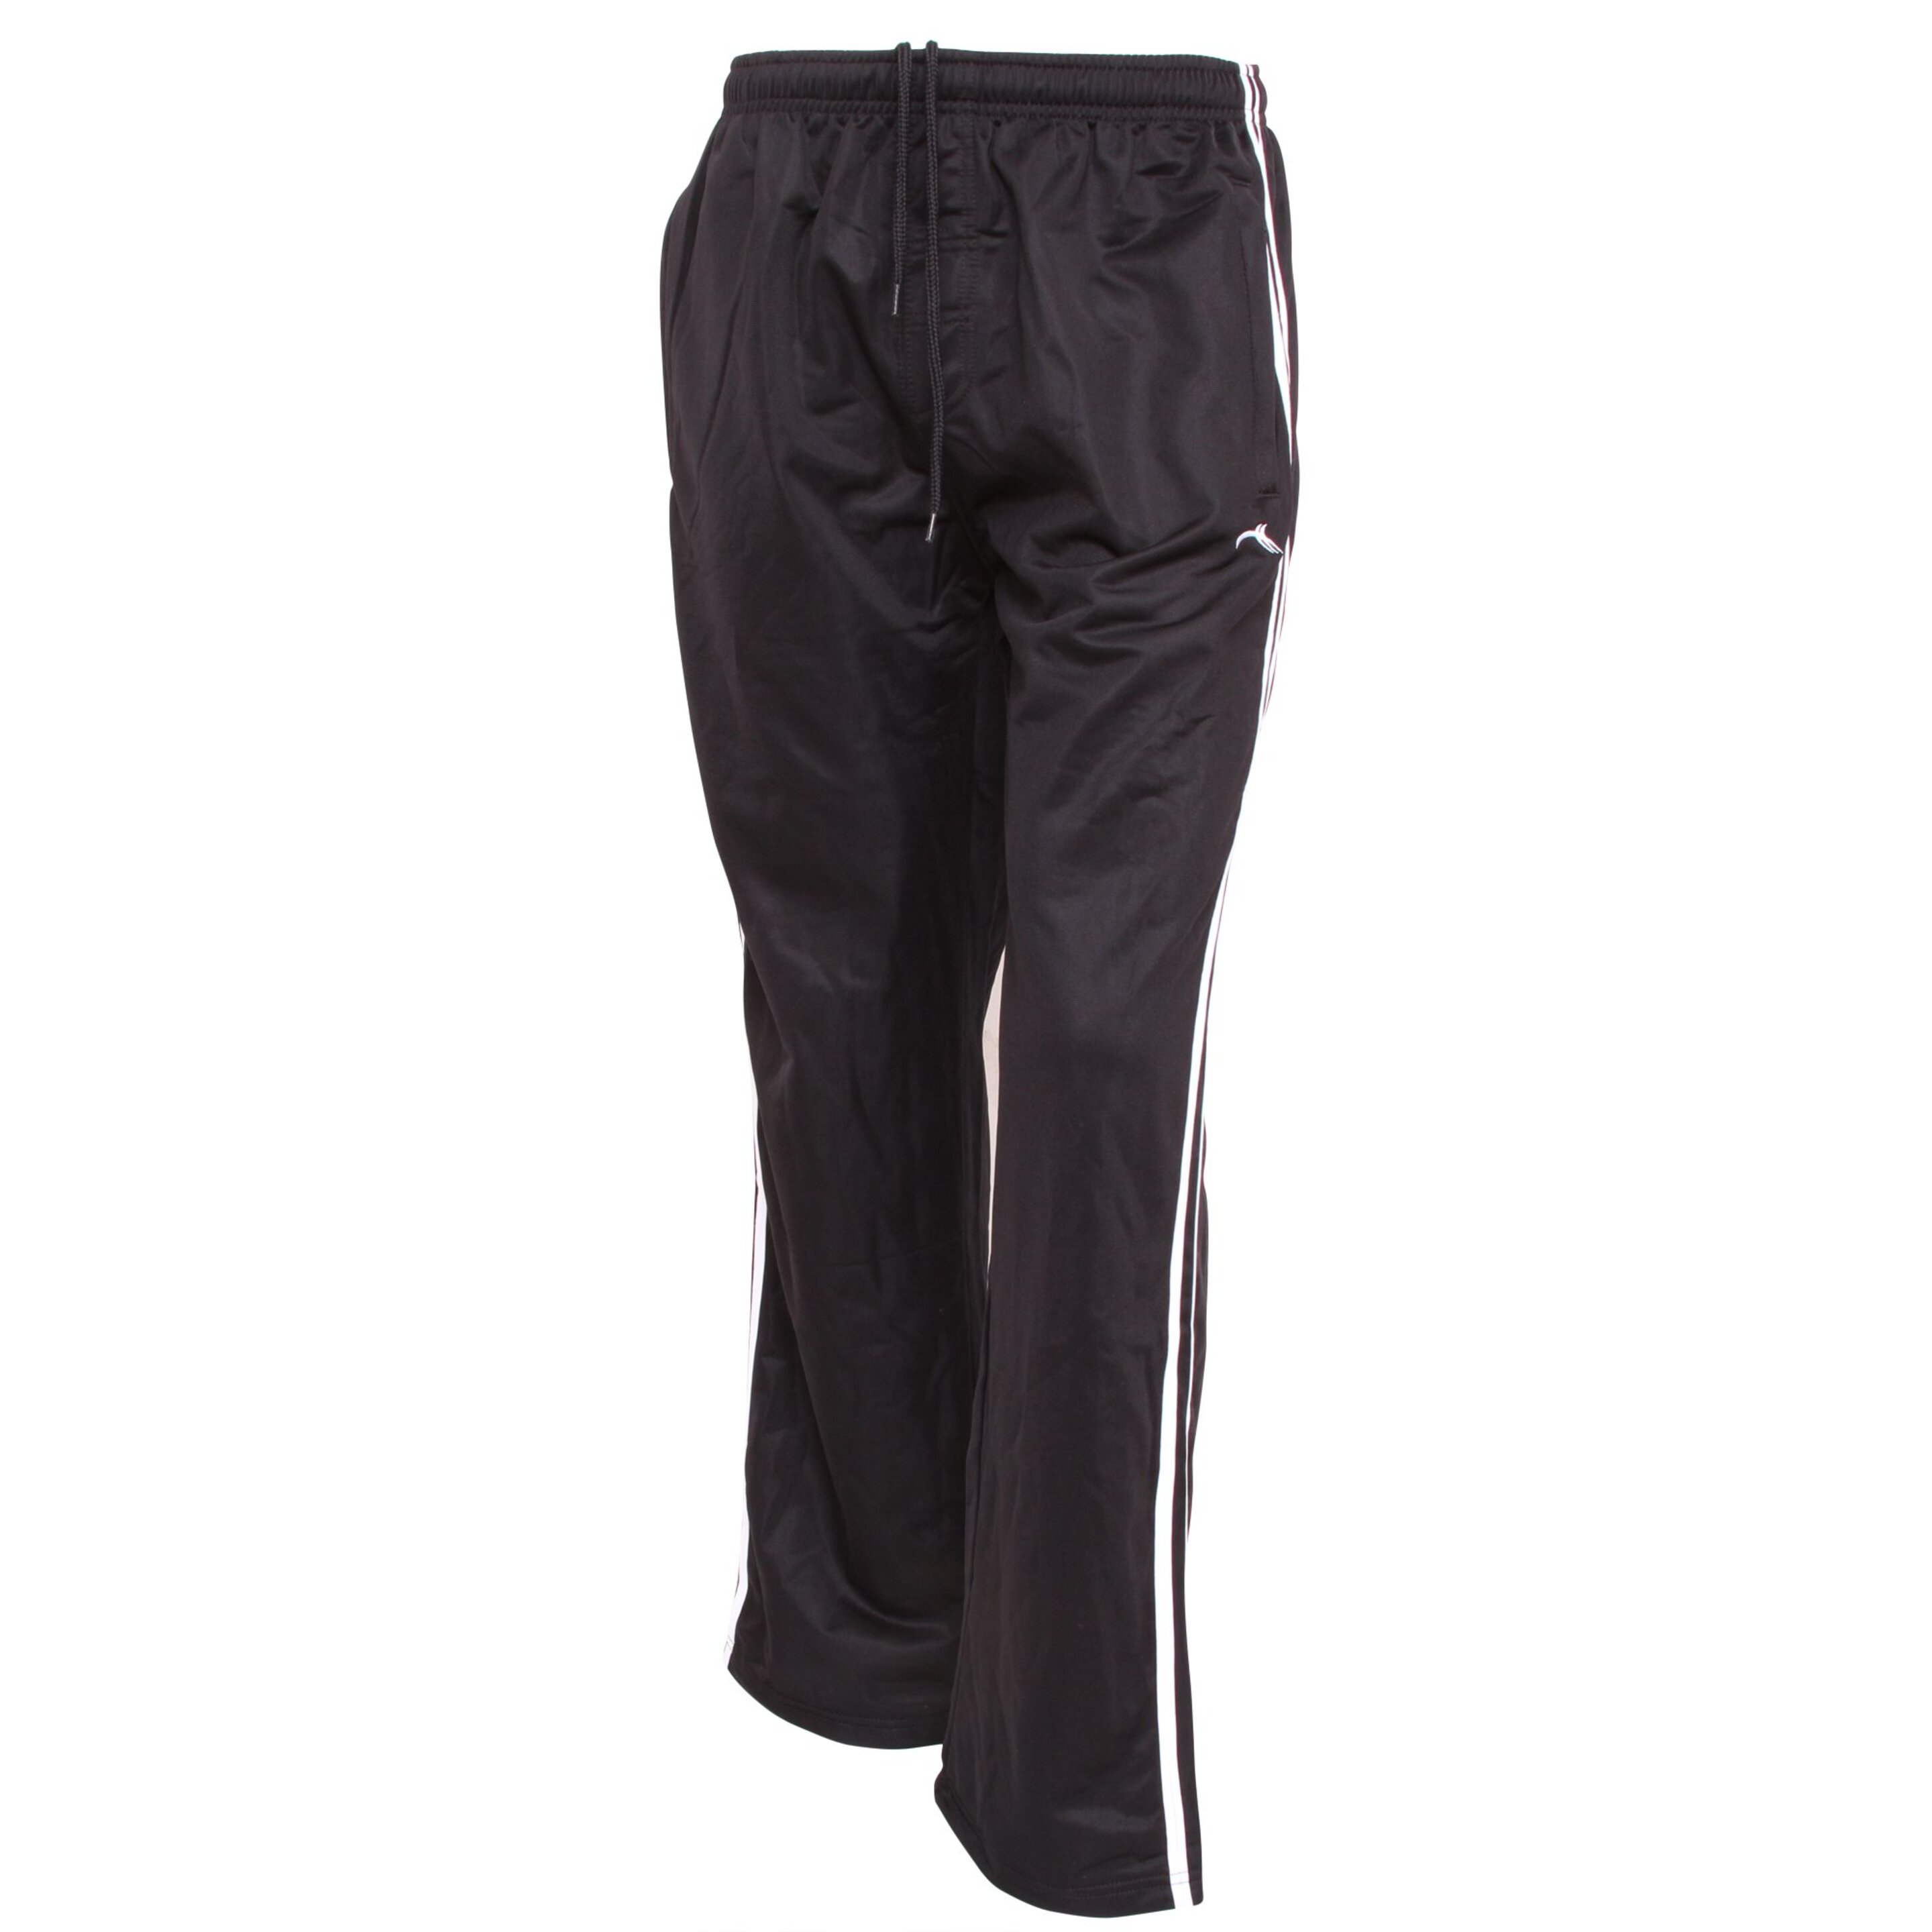 Pantalones Básicos De Chandal Estilo Casual - Negro  MKP